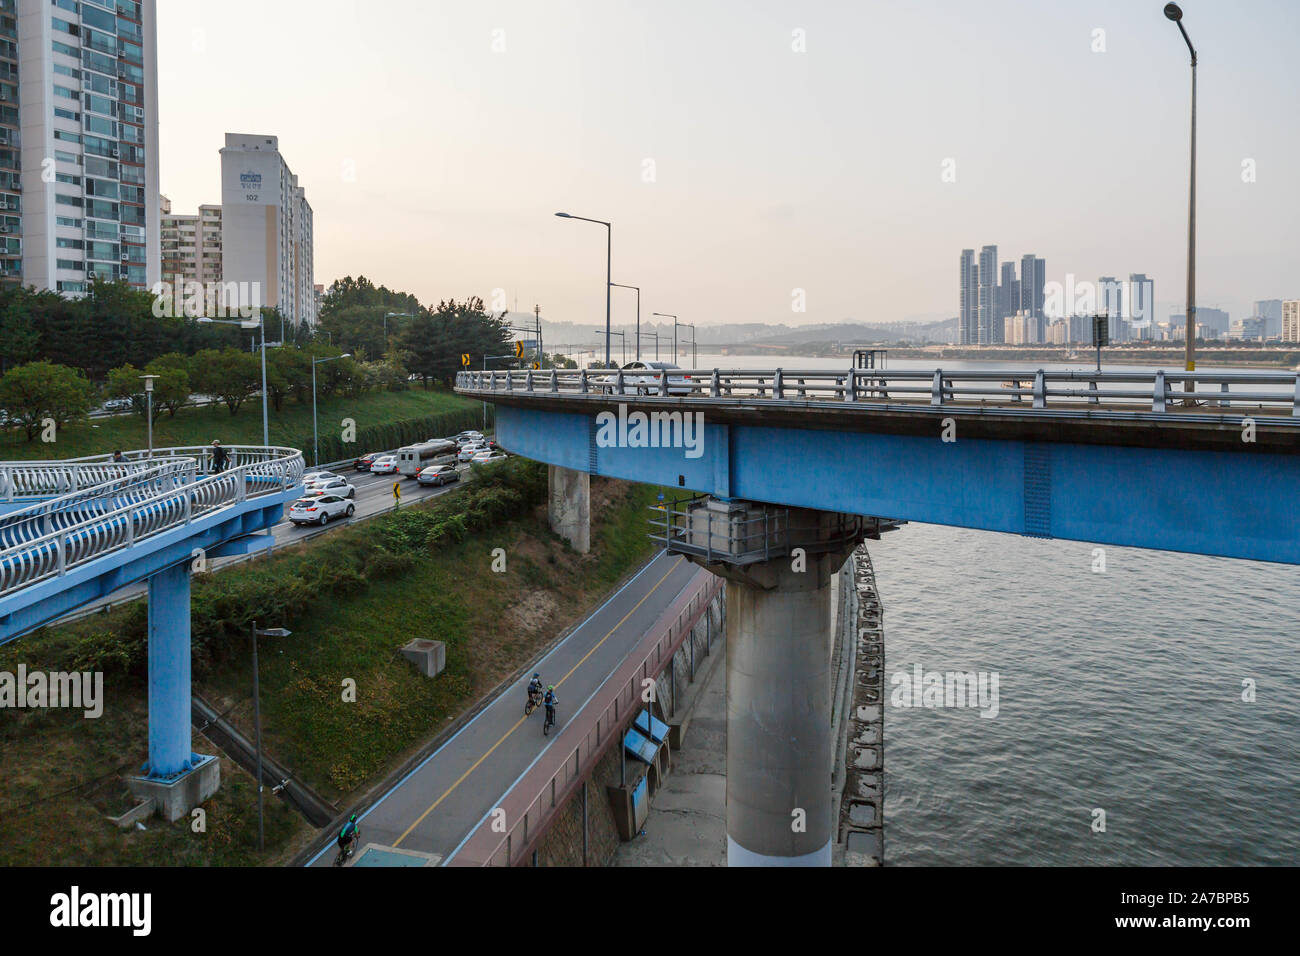 El sistema viario urbano en Seúl, Corea del Sur, la autopista, Bike Trail y paso a desnivel para vehículos y peatones están entrelazadas por el río Han. Foto de stock